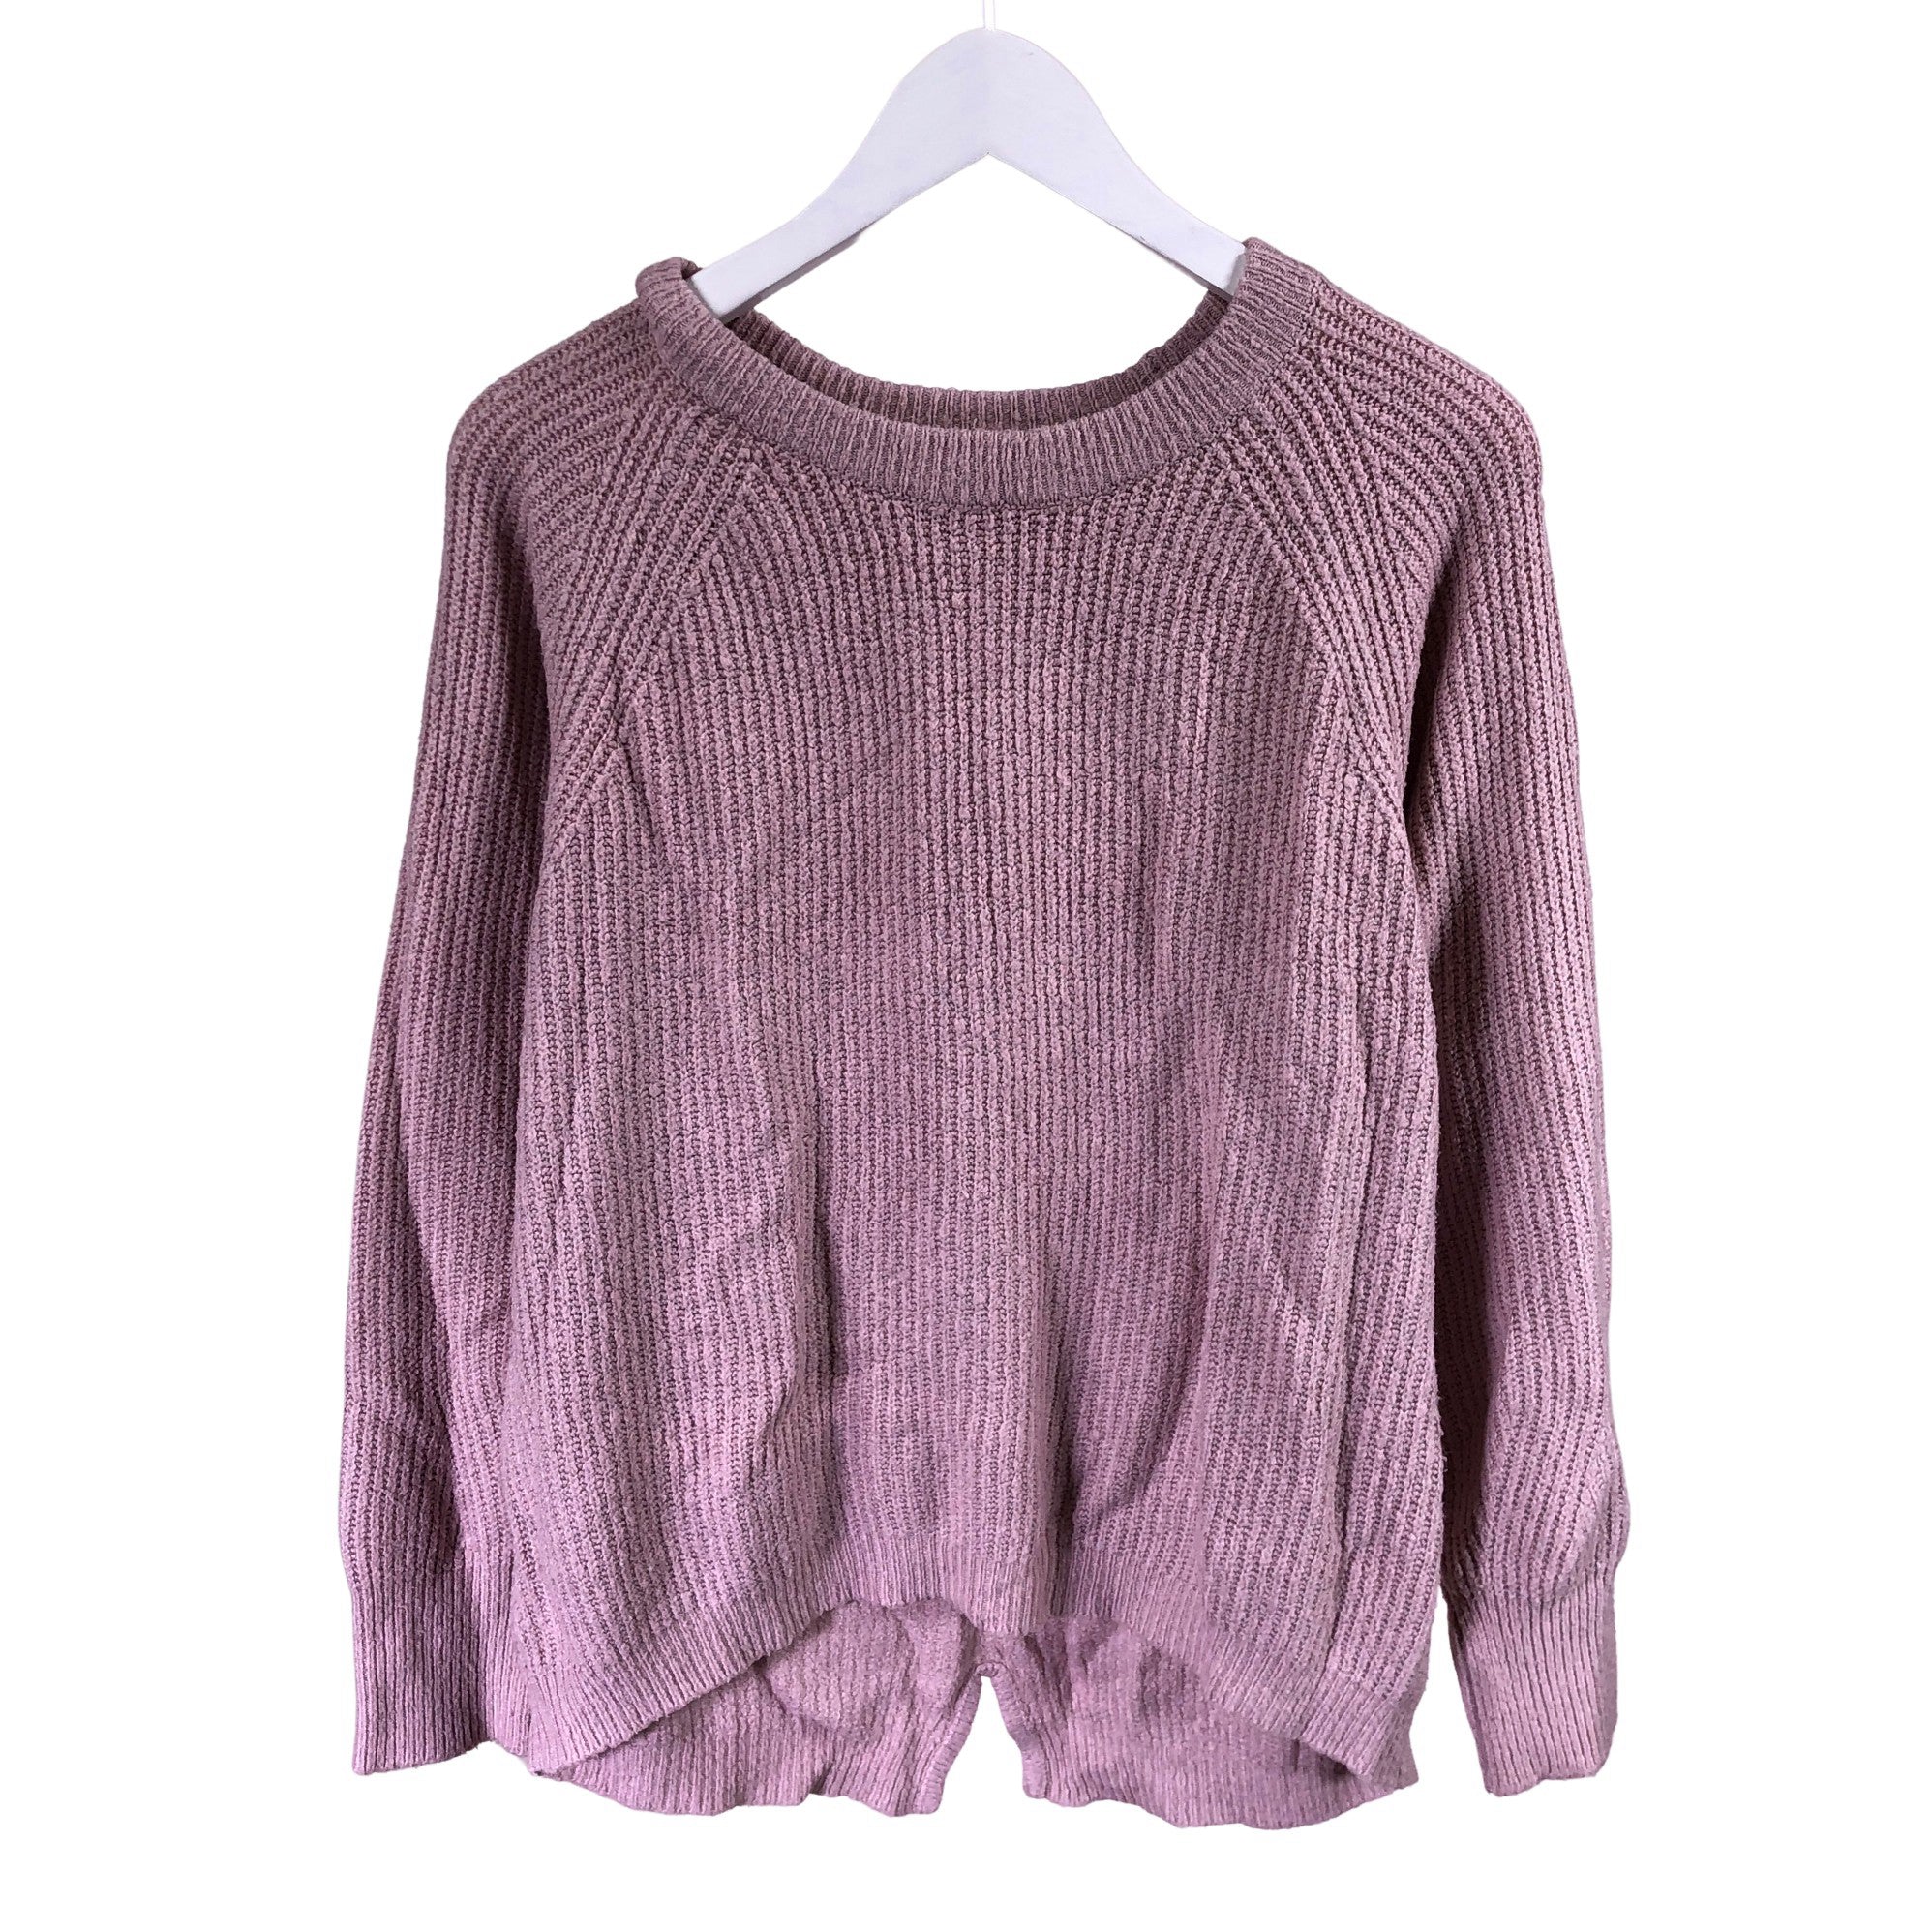 aanbidden periscoop dak Girls' Zara Sweater, size 158 - 164 (Light red) | Emmy